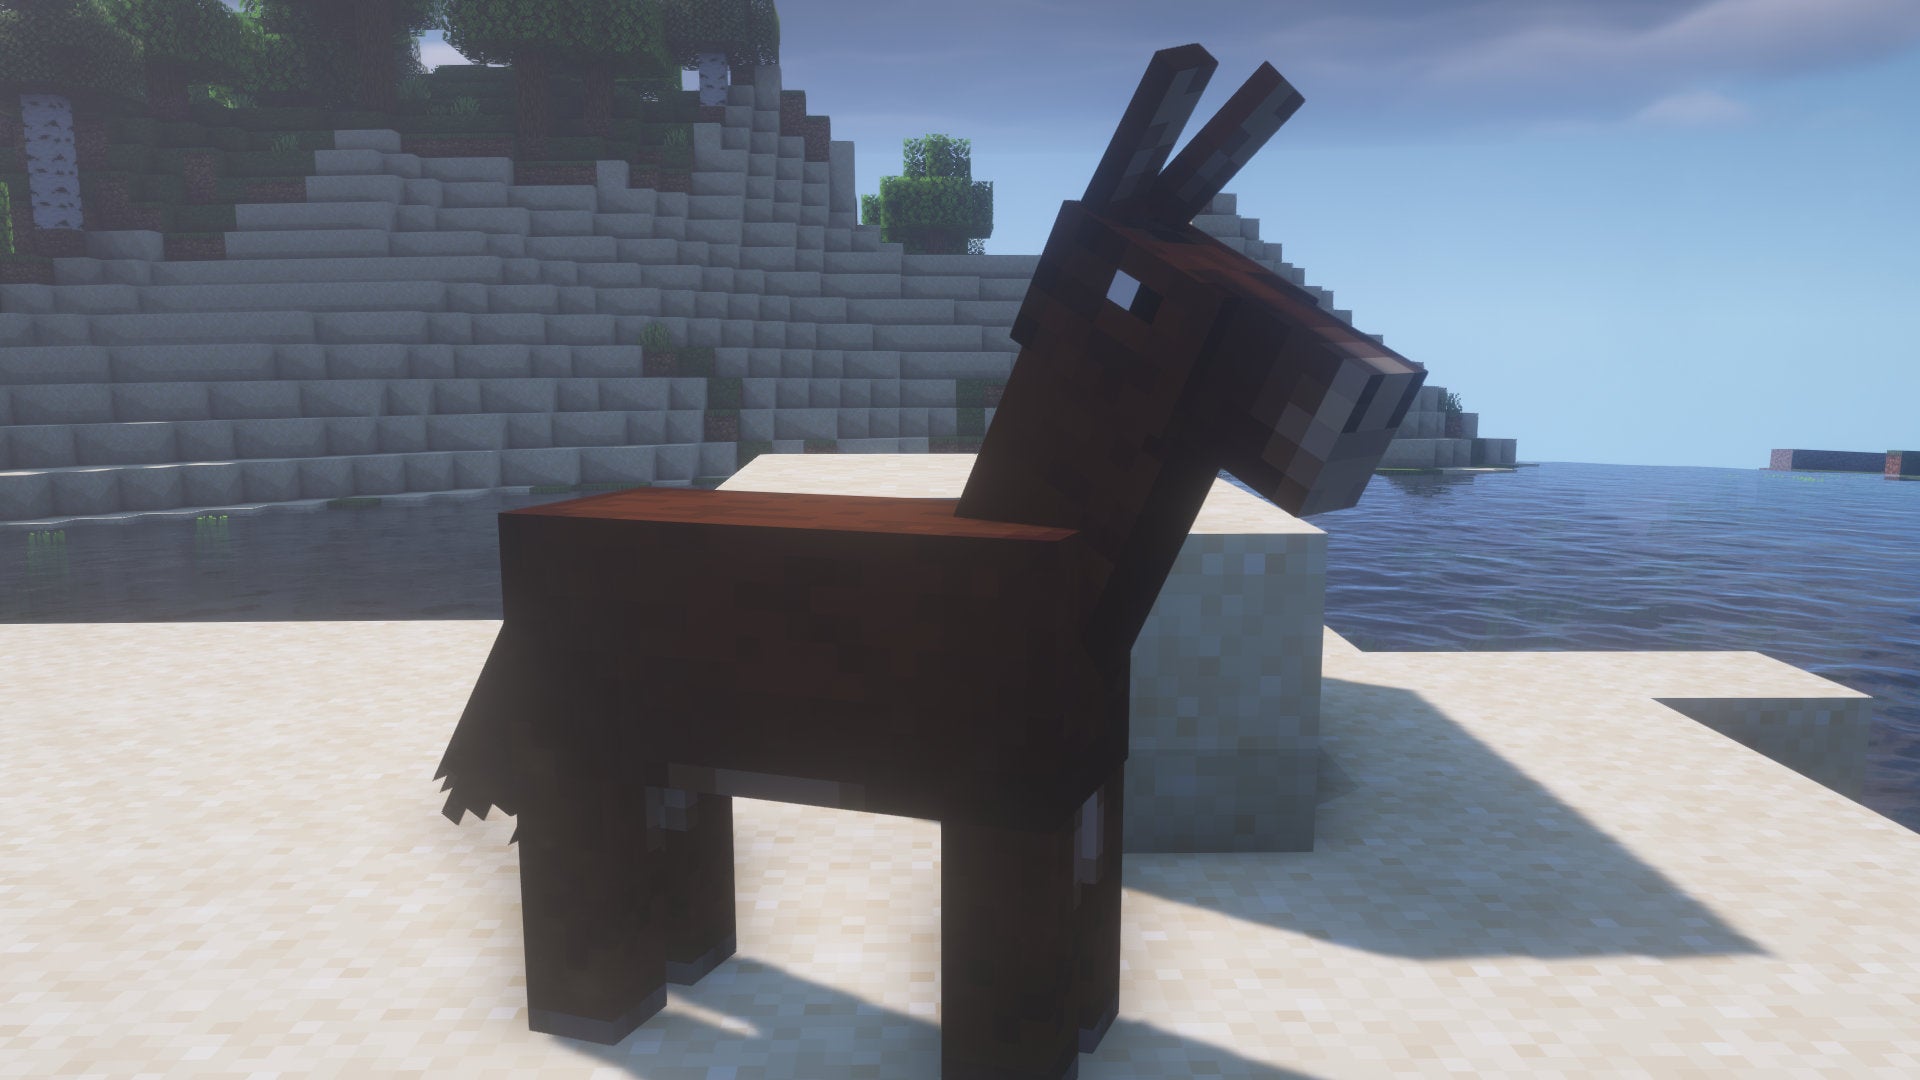 A Minecraft screenshot of a Mule standing on a beach.